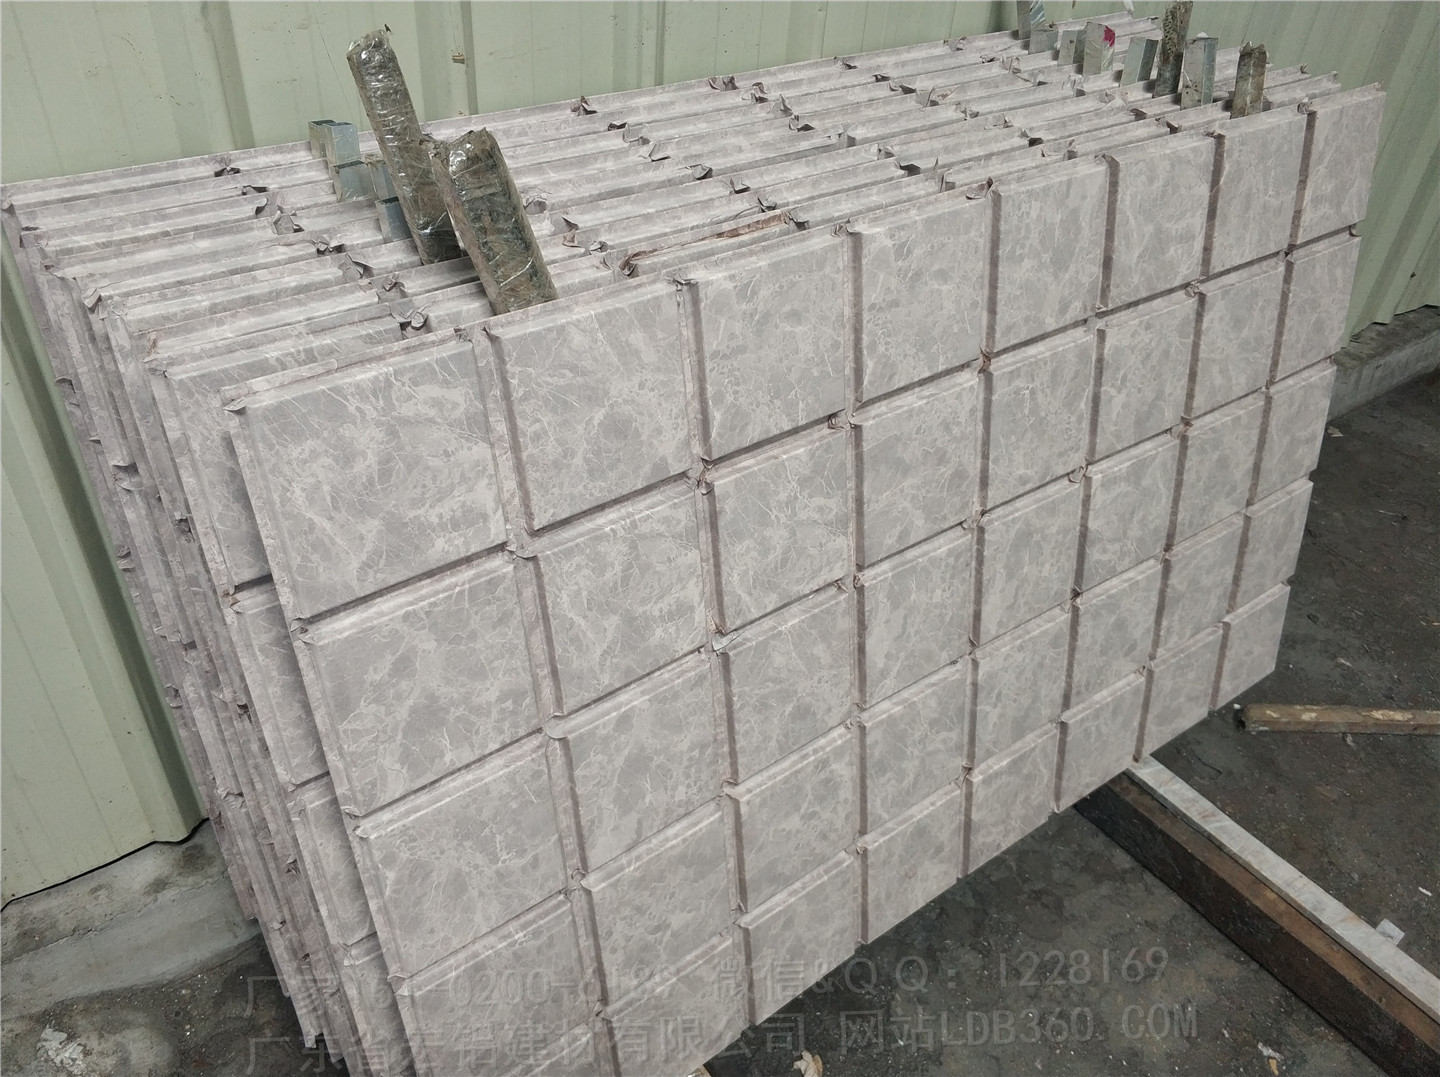 供应铝单板幕墙生产厂家；仿石纹铝幕墙生产公司 铝幕墙批发报价，异型铝幕墙图片